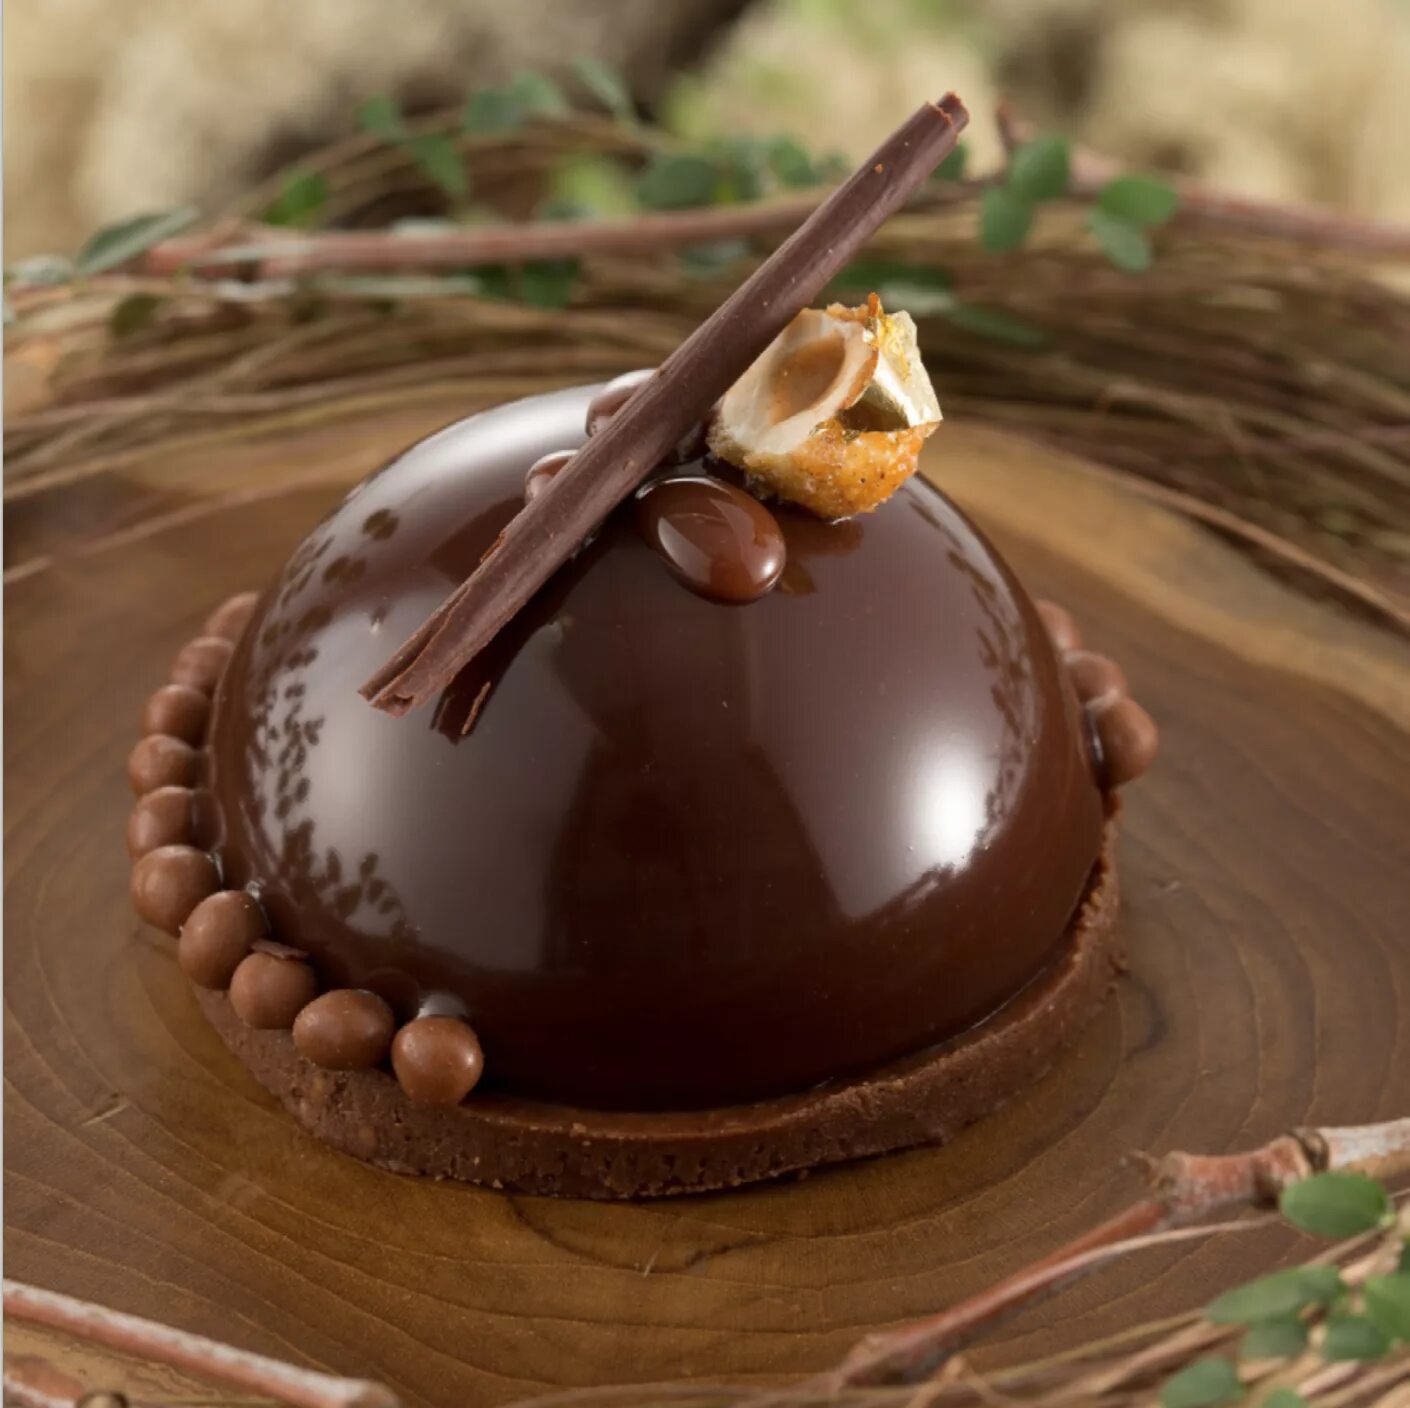 Шоколадный ганаш десерт. Шоколадная глазурь кувертюр. Шоколадные украшения для десертов. Десерт в шоколадной глазури. Глазурь производители